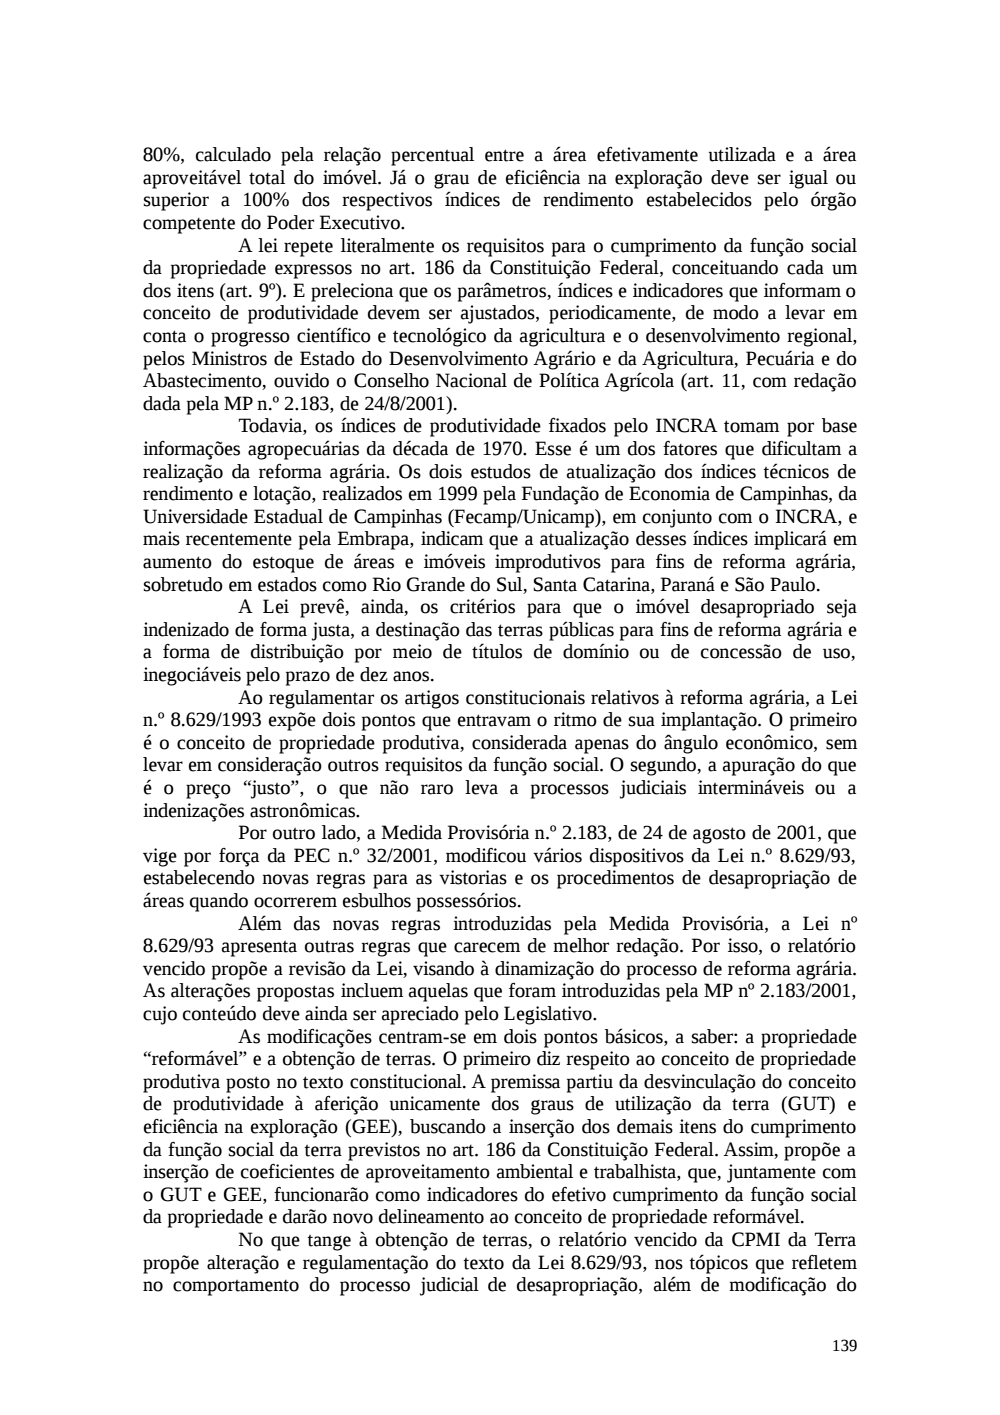 Page 139 from Relatório final da comissão